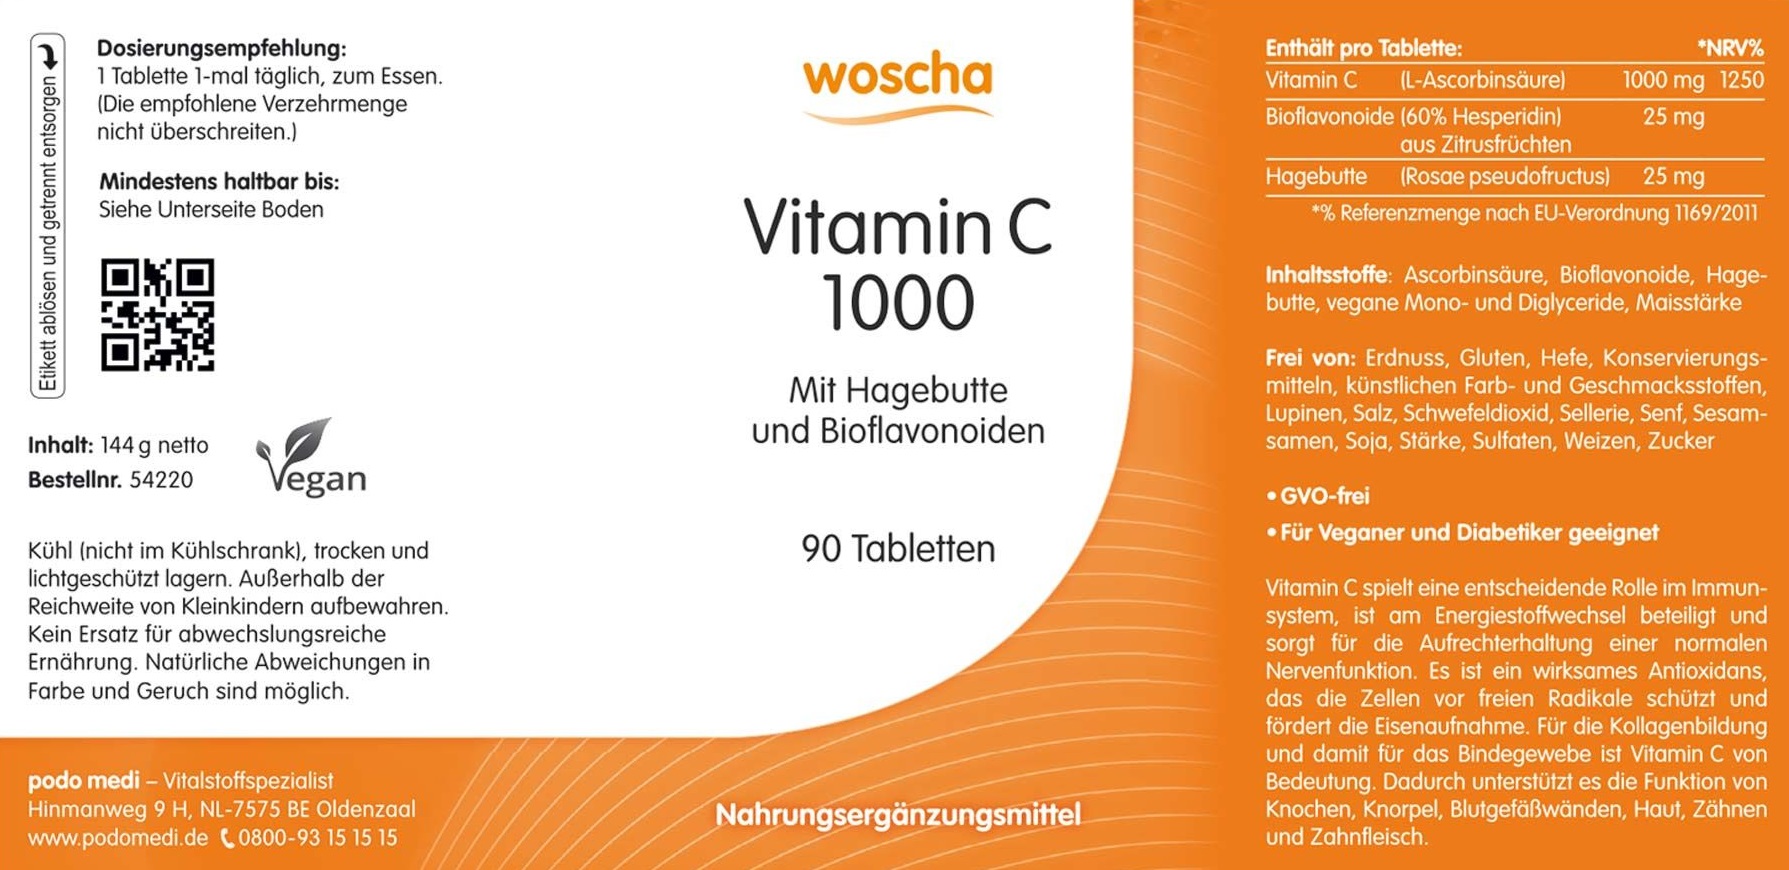 Woscha Vitamin C 1000 mit Hagebutte von podo medi beinhaltet 90 Tabletten Etikett